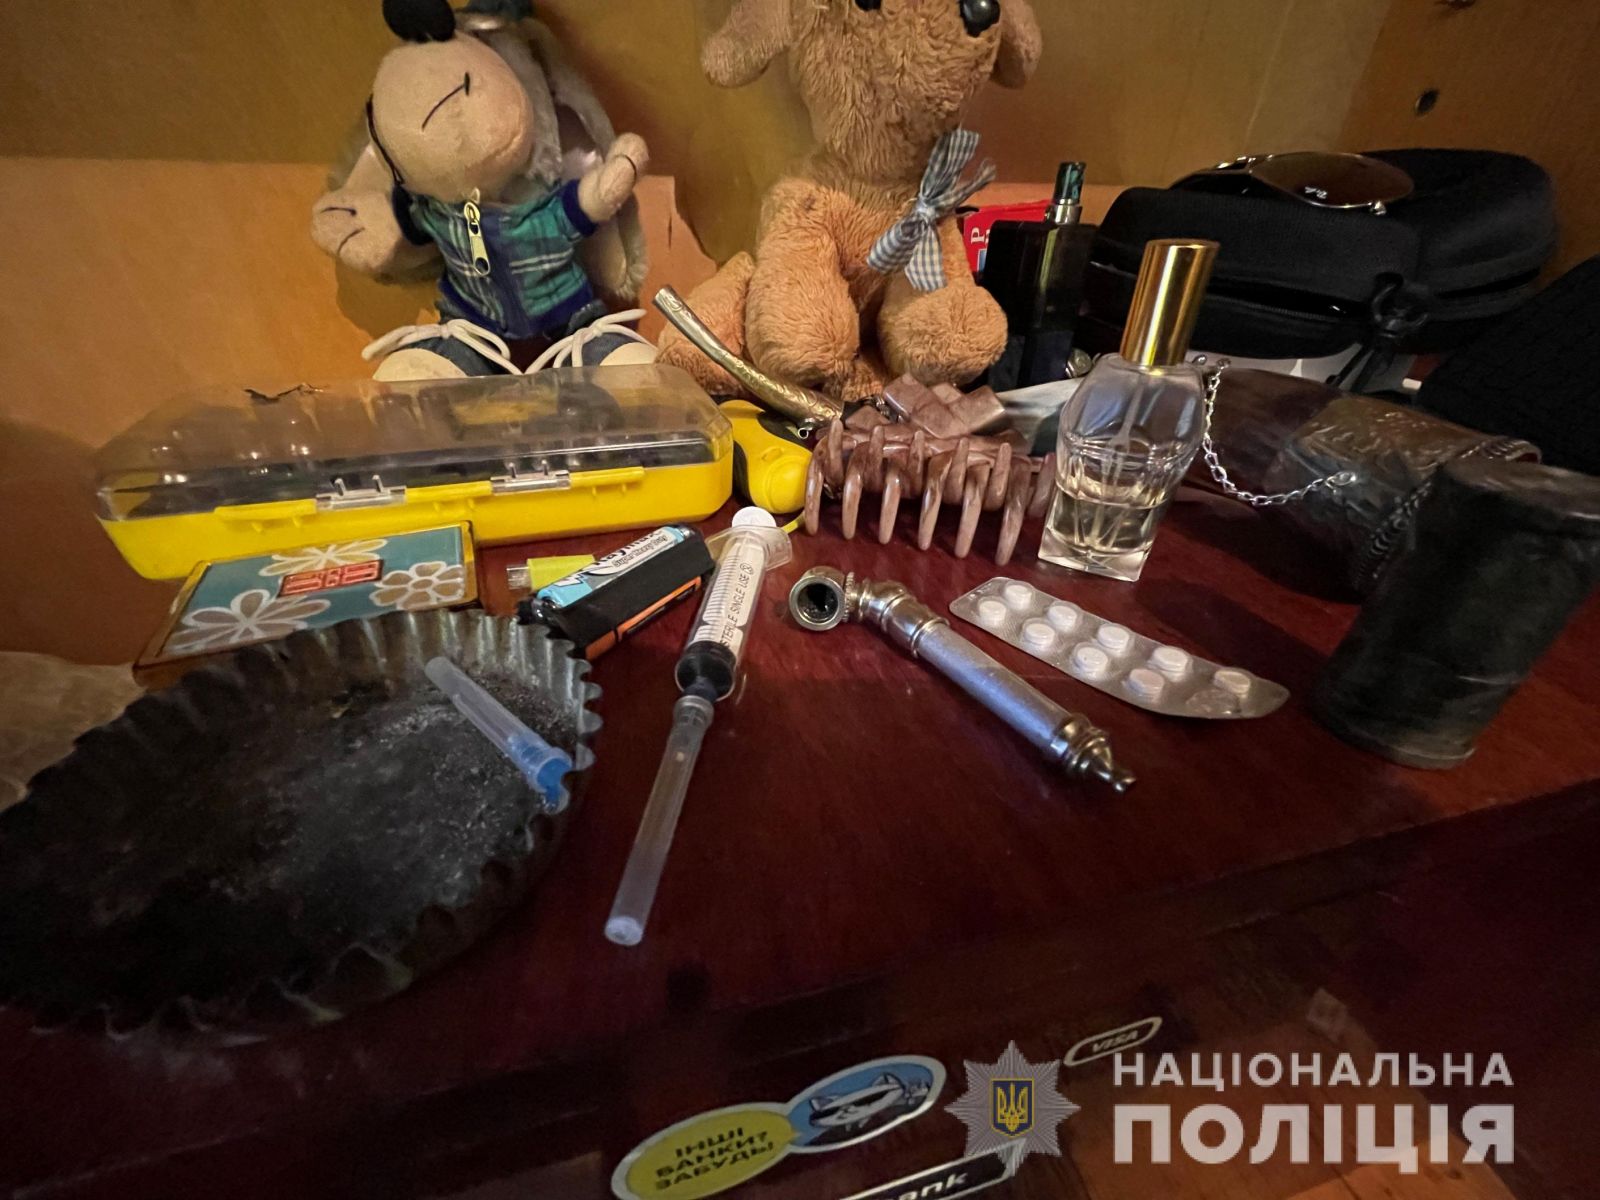 Харьковчанин устроил в собственной квартире наркопритон